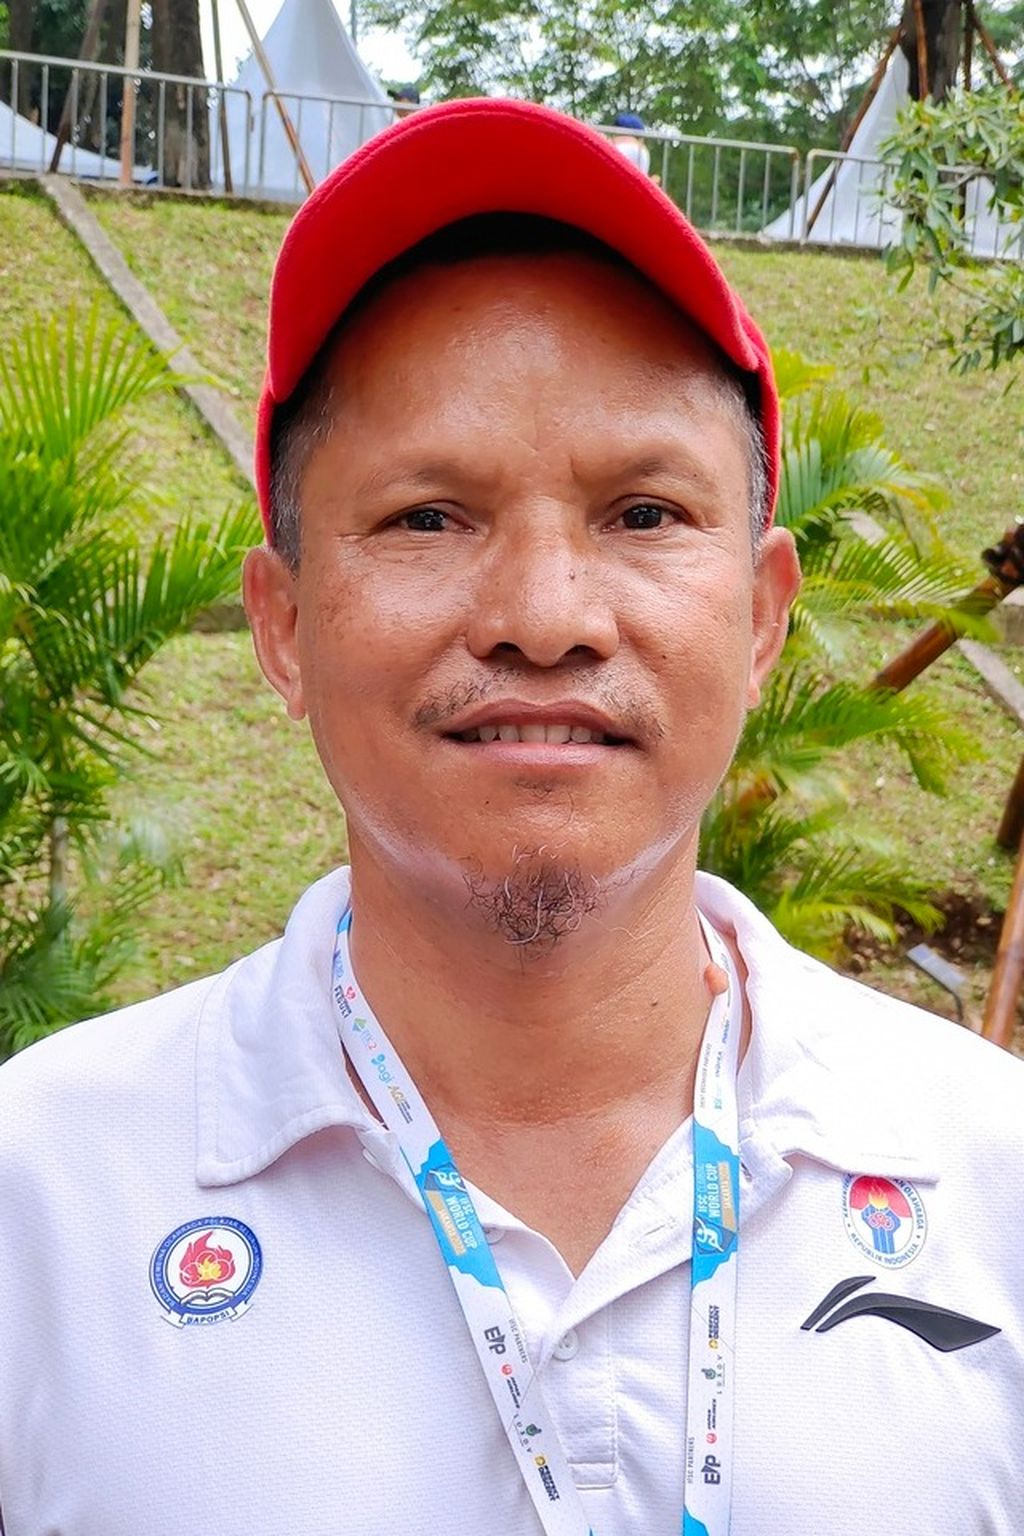 Pelatih panjat tebing pemusatan latihan nasional Pengurus Besar Federasi Panjat Tebing Indonesia (PB FPTI) Triyanto Budi Santoso.